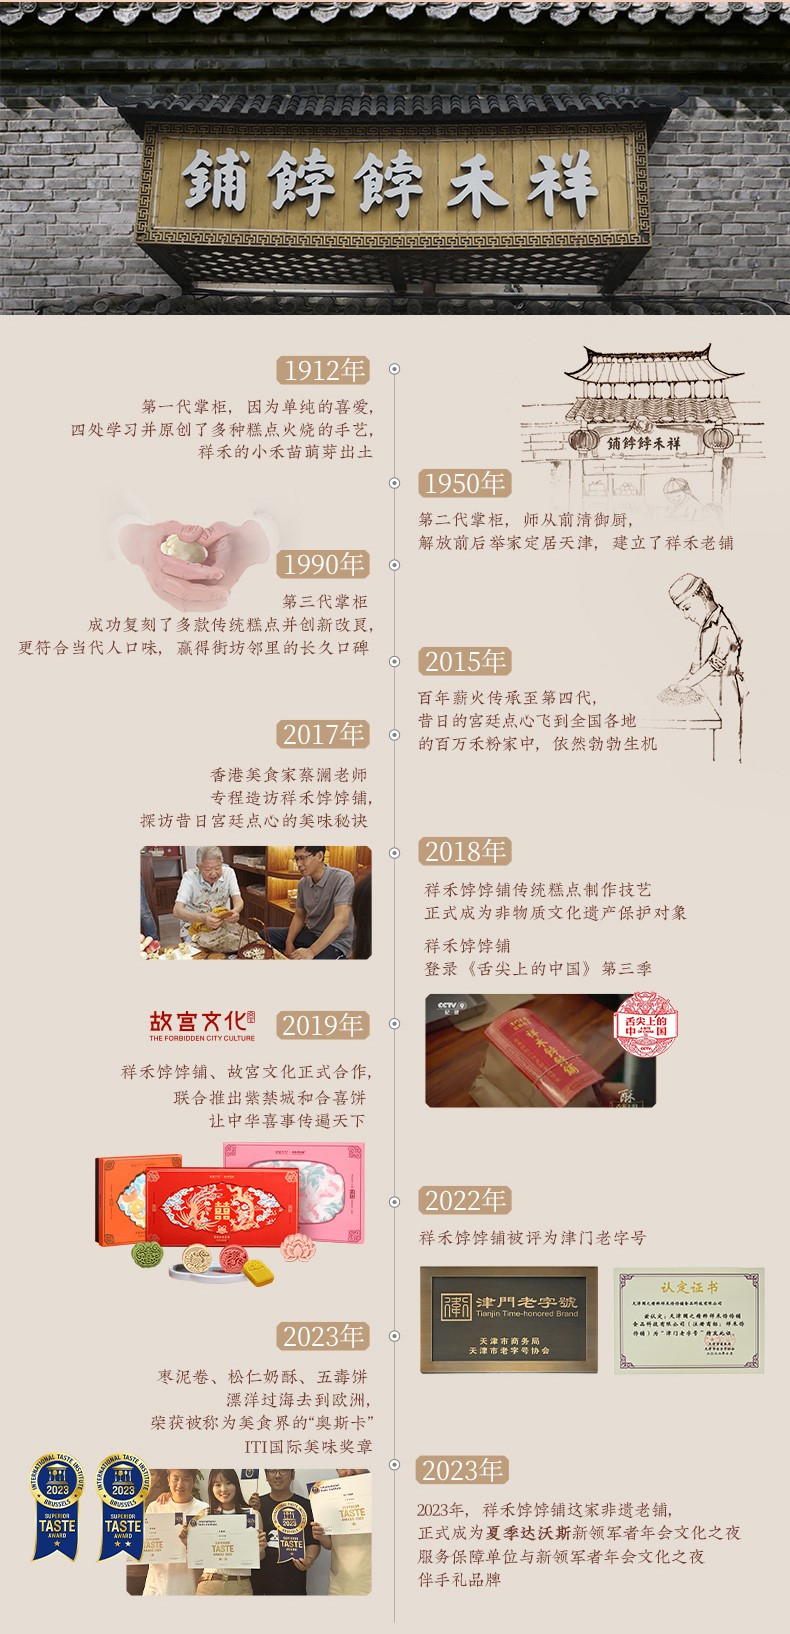 祥禾饽饽铺 980g新春年货【美福桶】中式糕点礼盒+礼袋